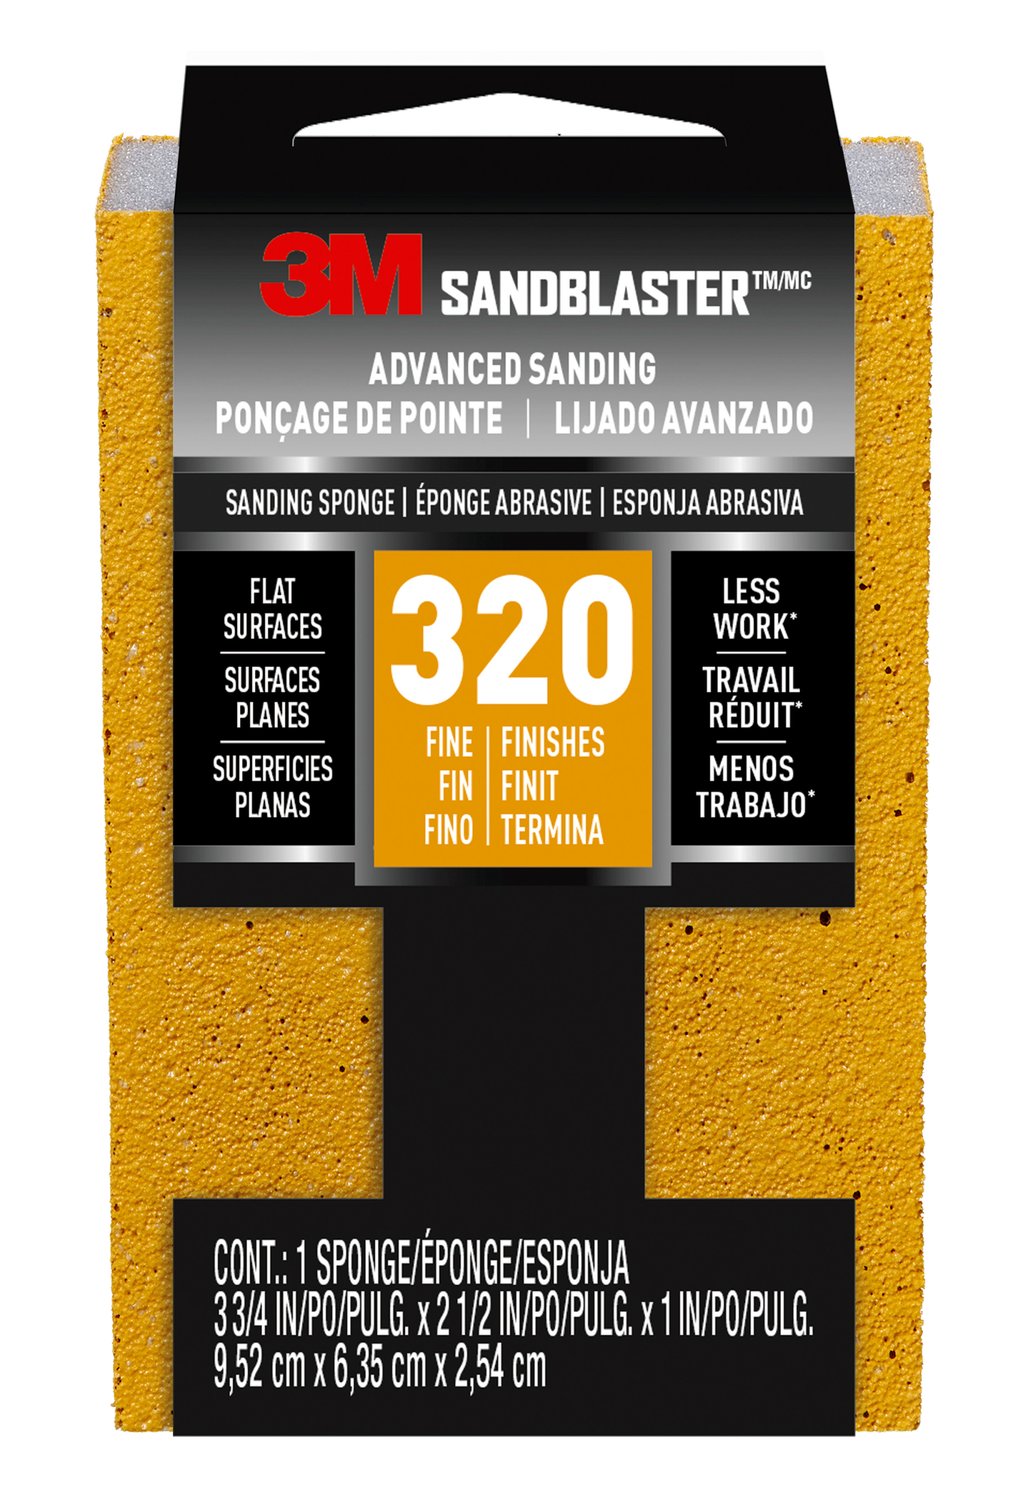 7010369787 - 3M SandBlaster Advanced Sanding Sanding Sponge, 20907-320 ,320 grit, 3
3/4 in x 2 1/2 x 1 in, 1/pk